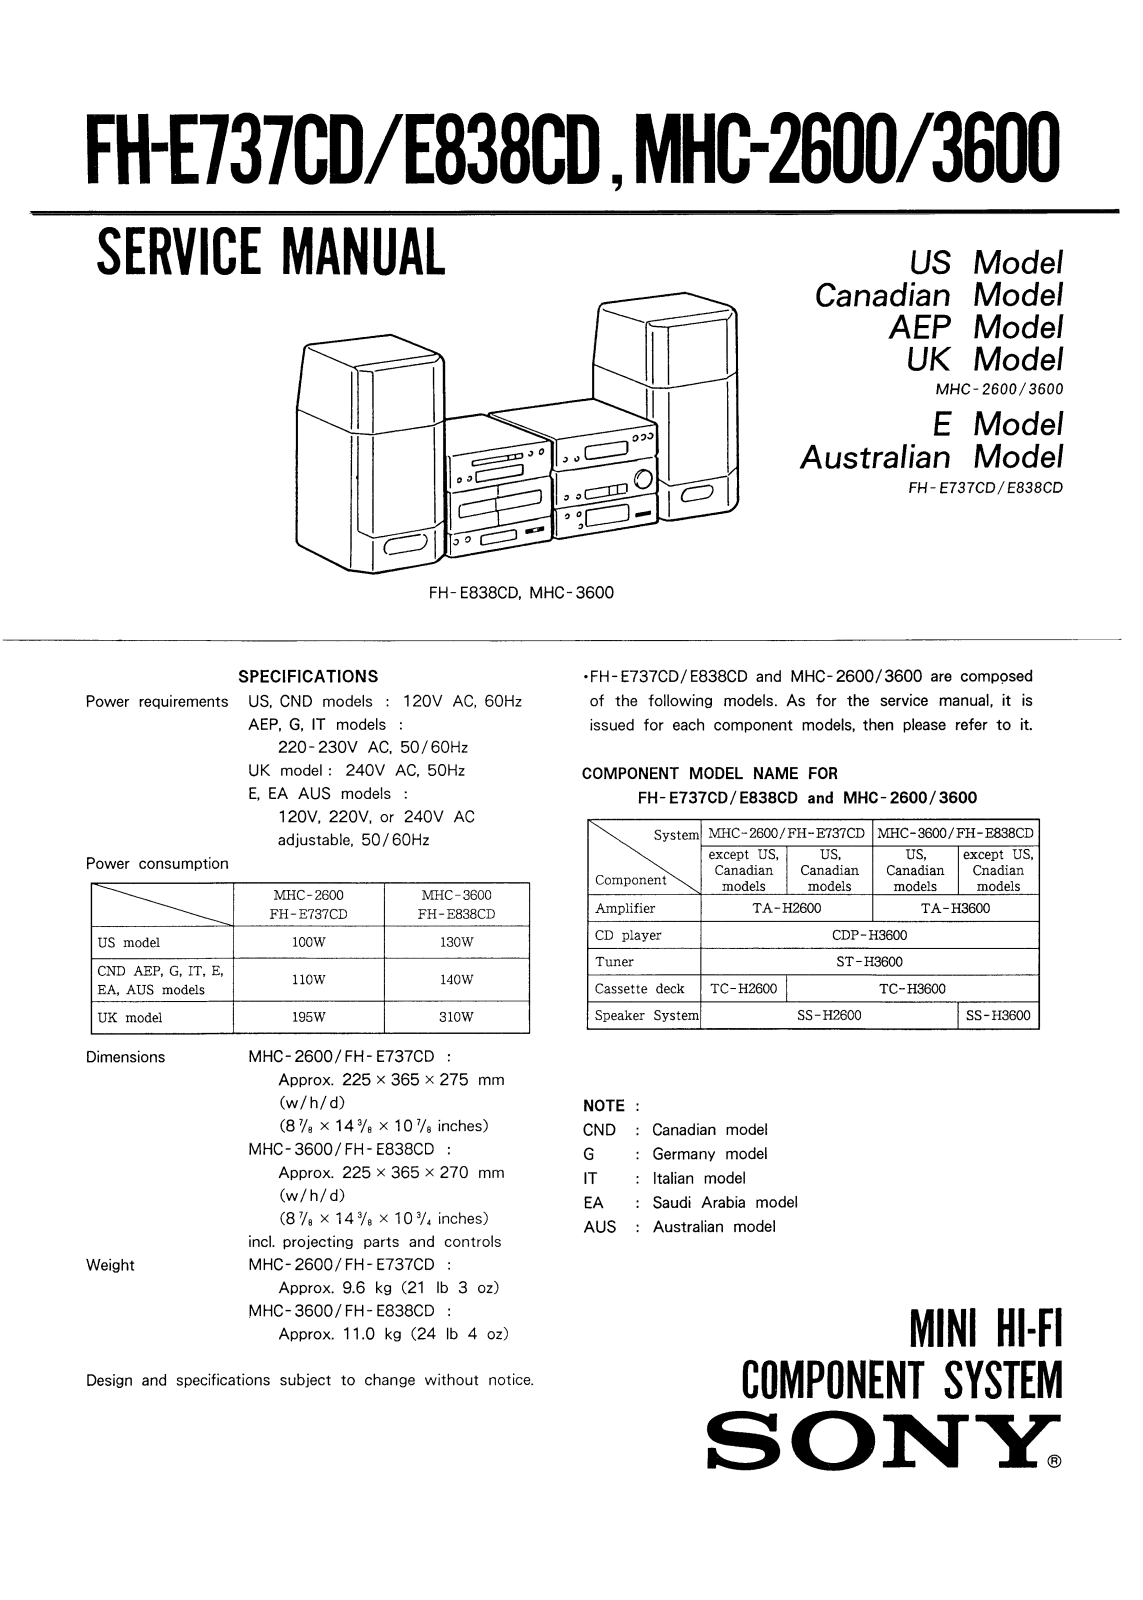 SONY FH-E838CD, FH-E733CD, MHC-3600, MHC-2600 SERVICE MANUAL